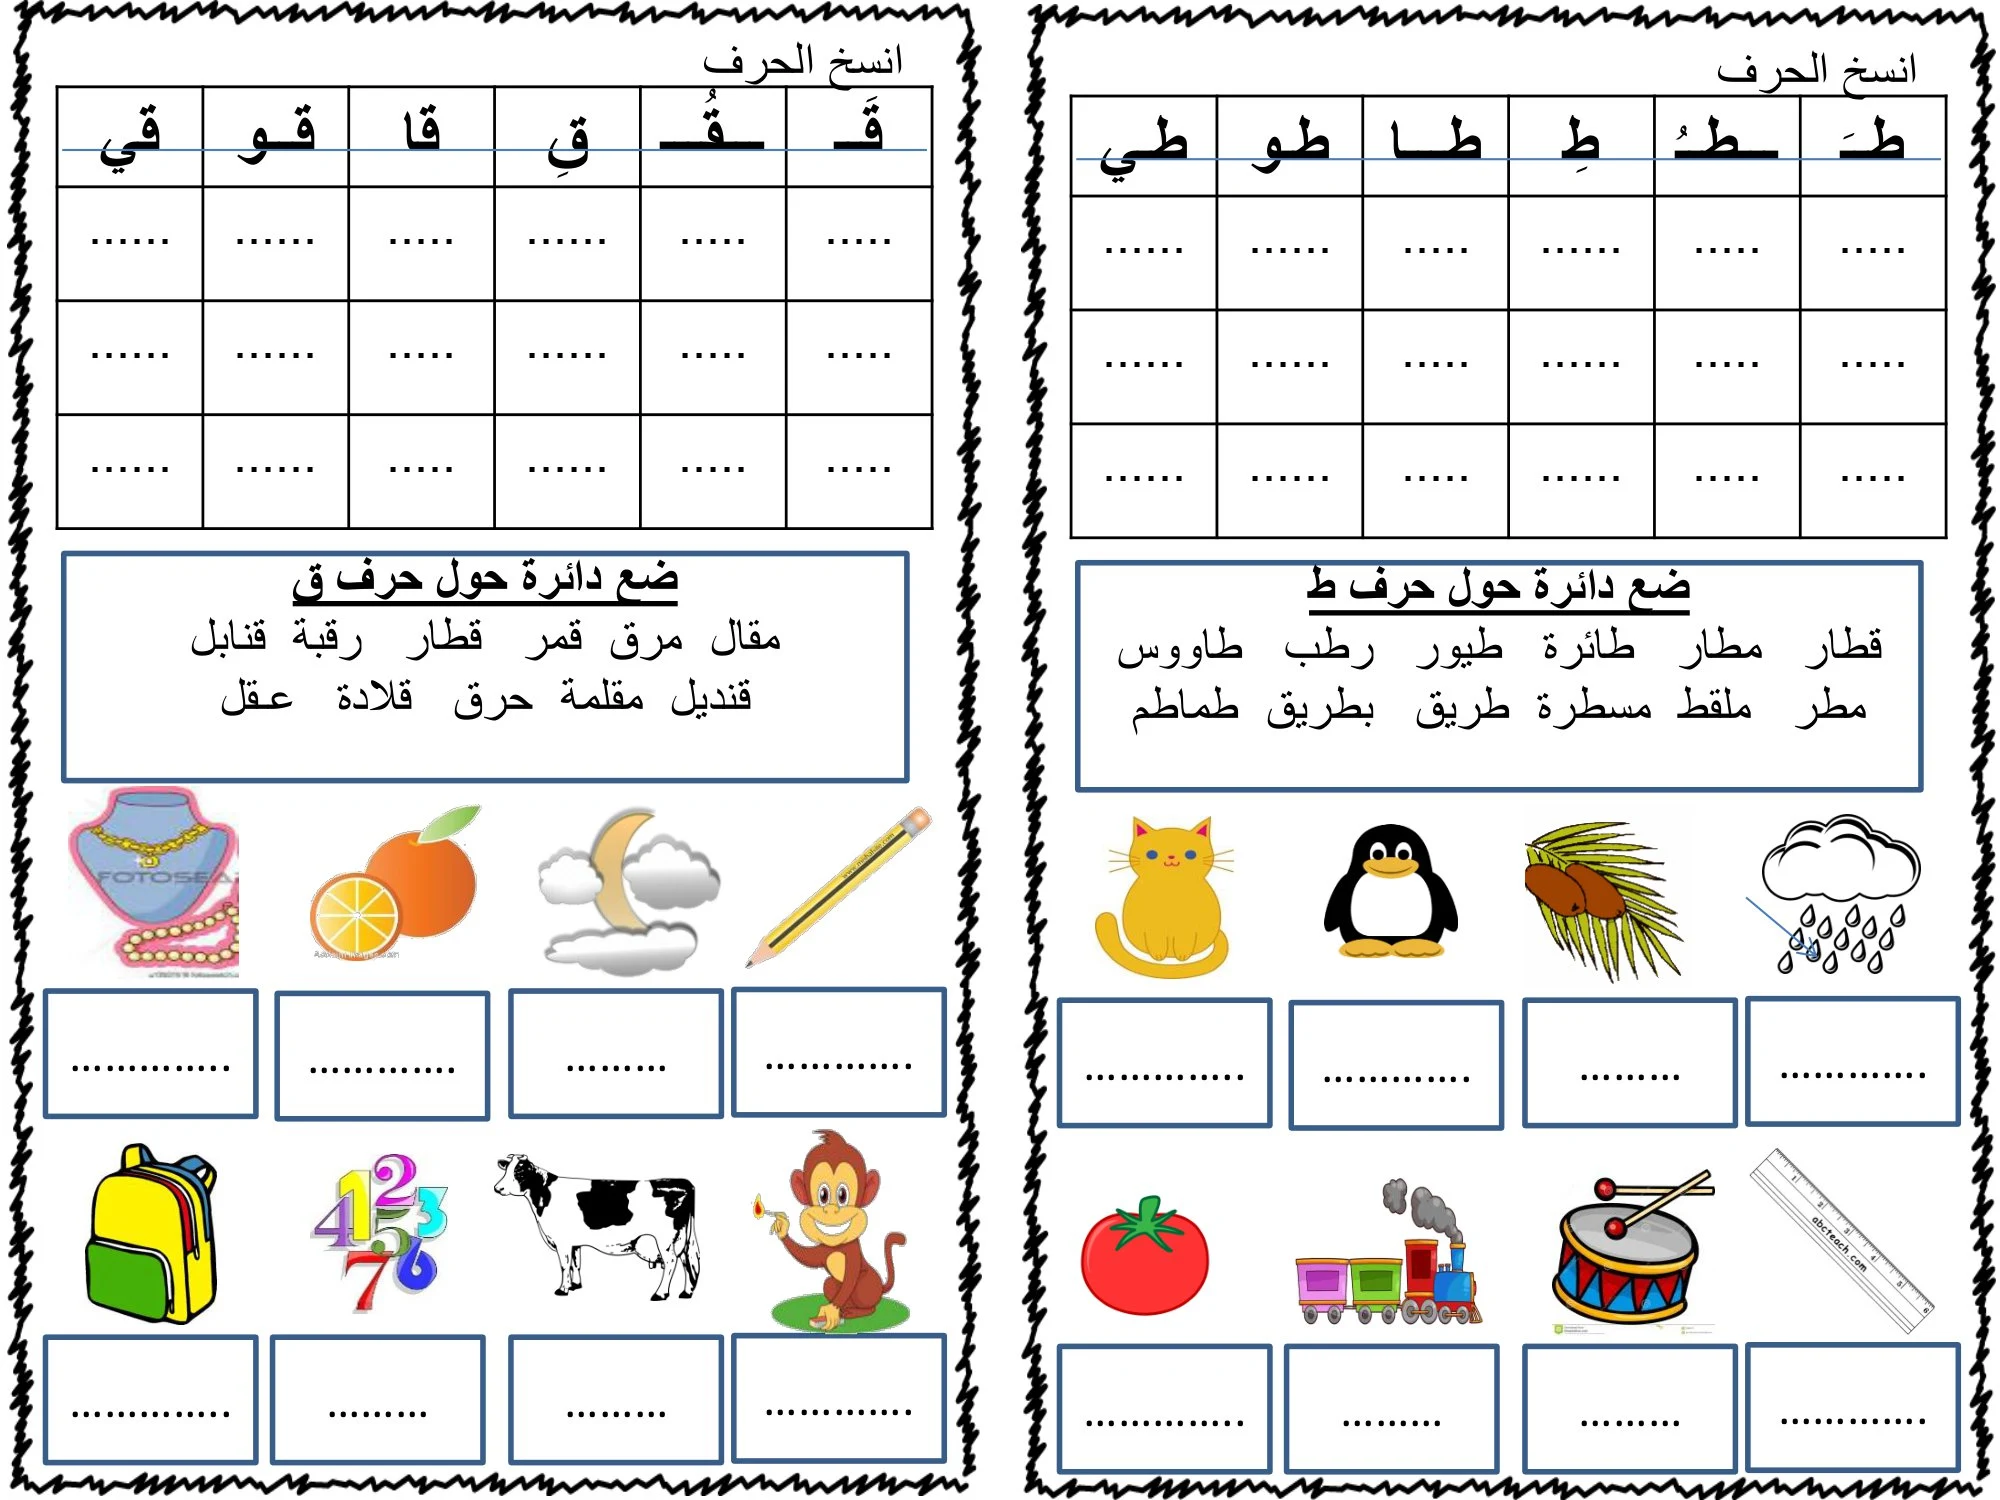 مذكرة لمراجعة حروف اللغة العربية للصف الأول الابتدائي pdf